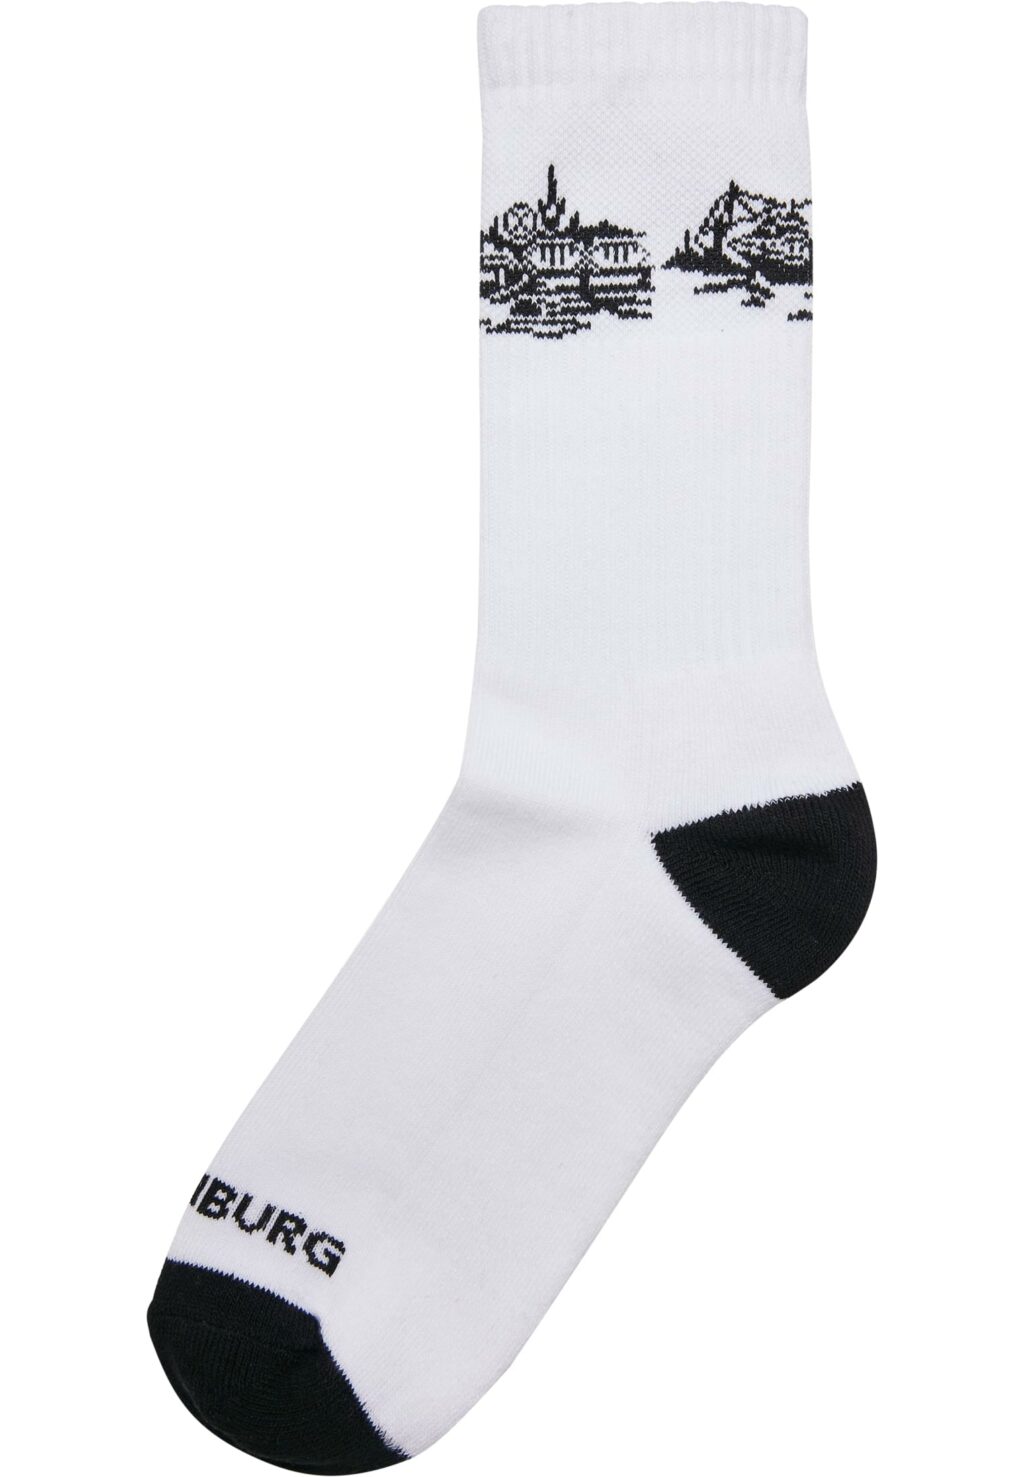 Major City 040 Socks 2-Pack black/white MT2315